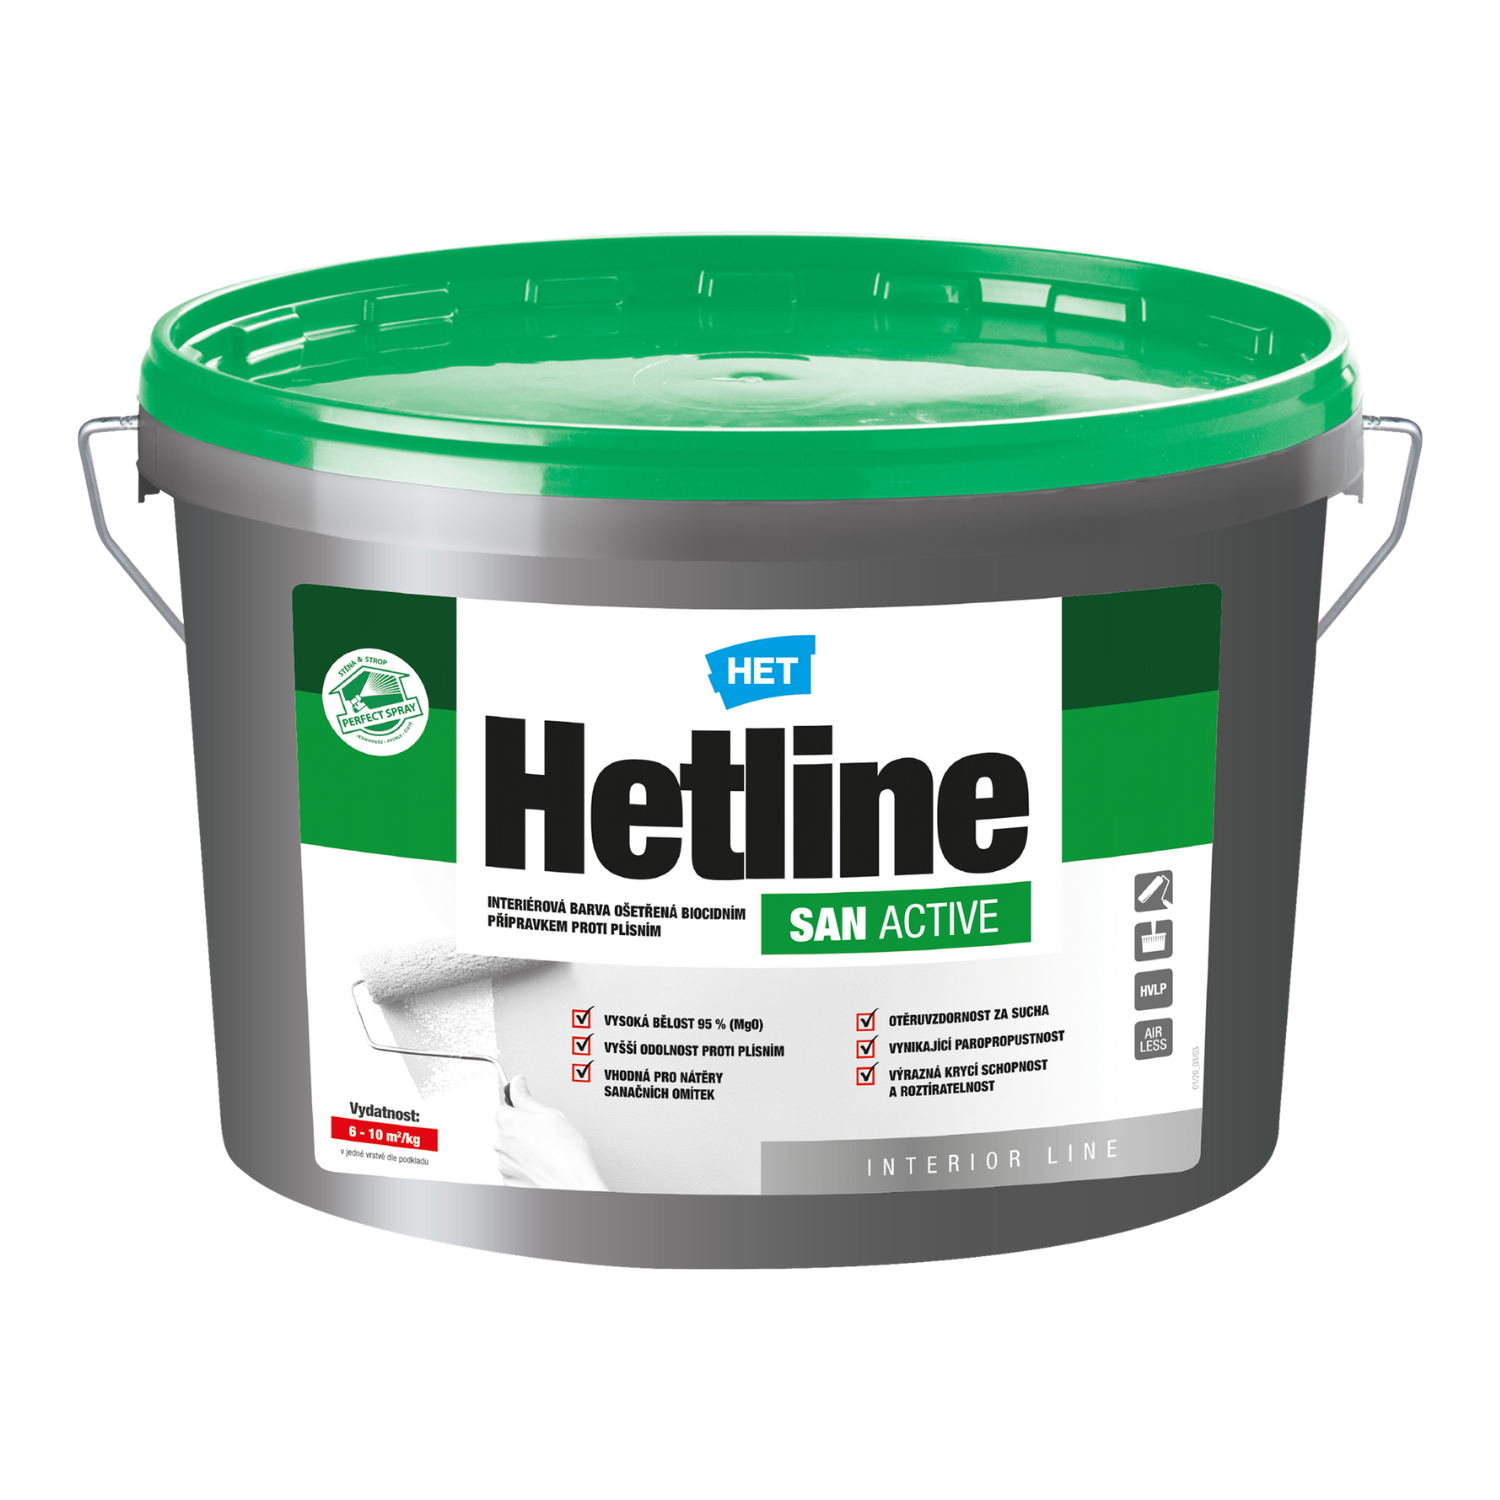 HET Hetline SAN ACTIVE interiérová biela farba ošetrená biocídnym prípravkom proti plesniam 7 kg